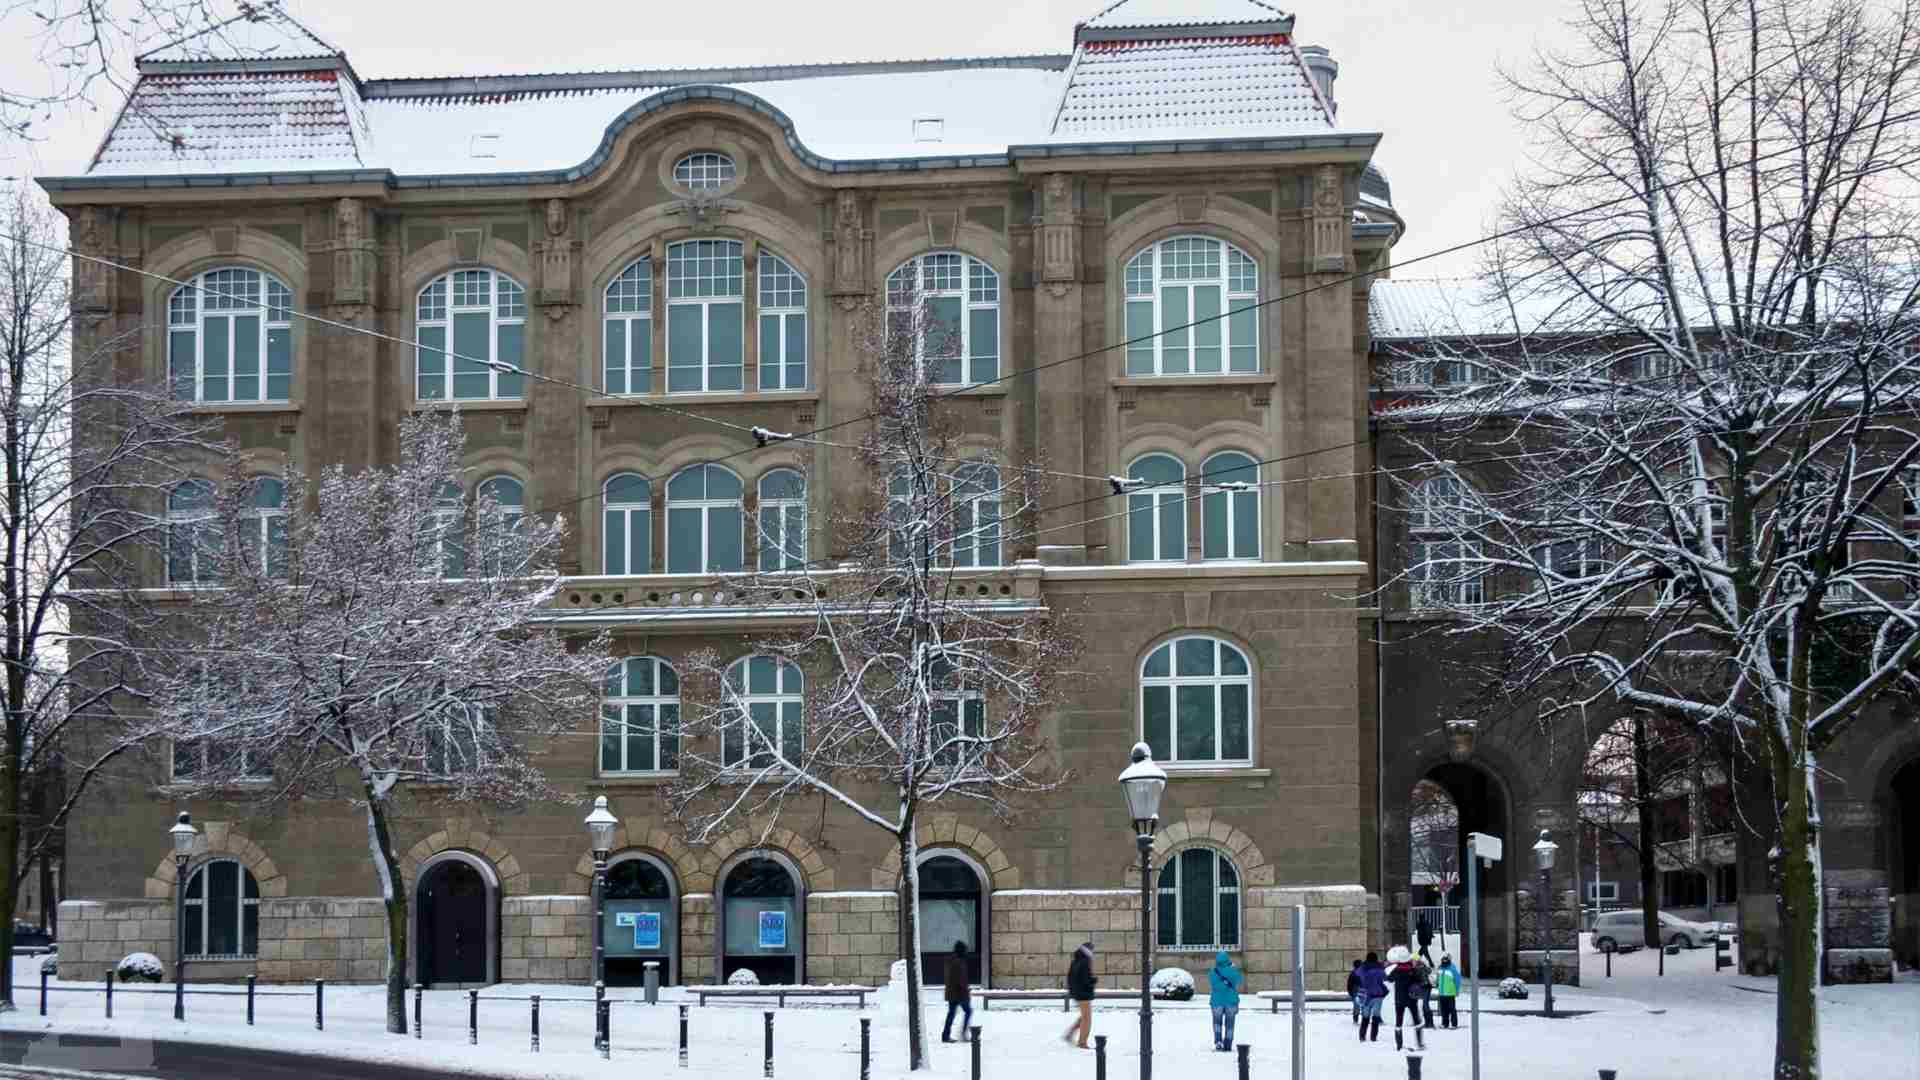 Städtisches Museum